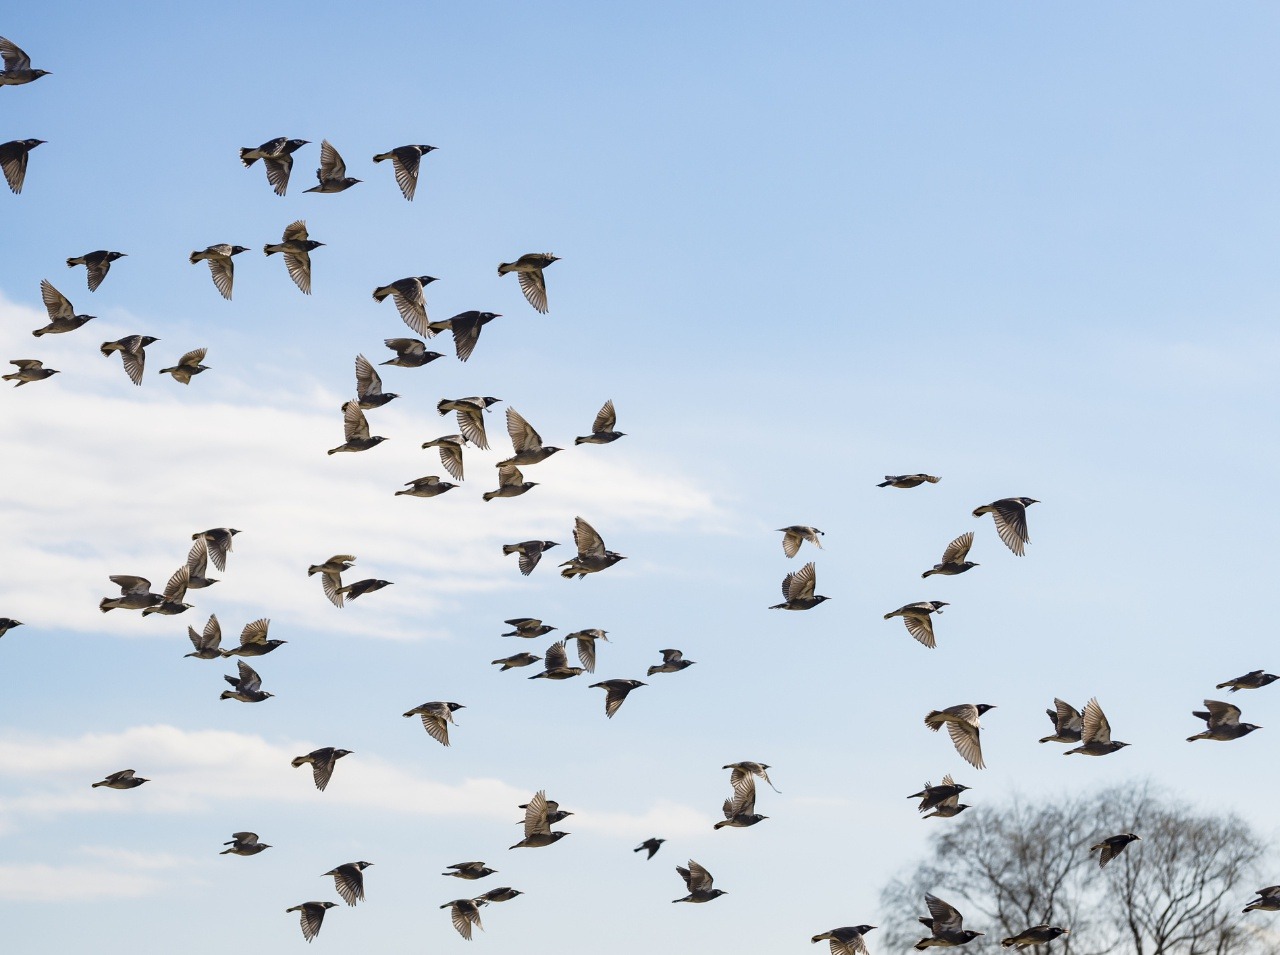 Pozorovanie vtákov zlepšuje mentálne zdravie.